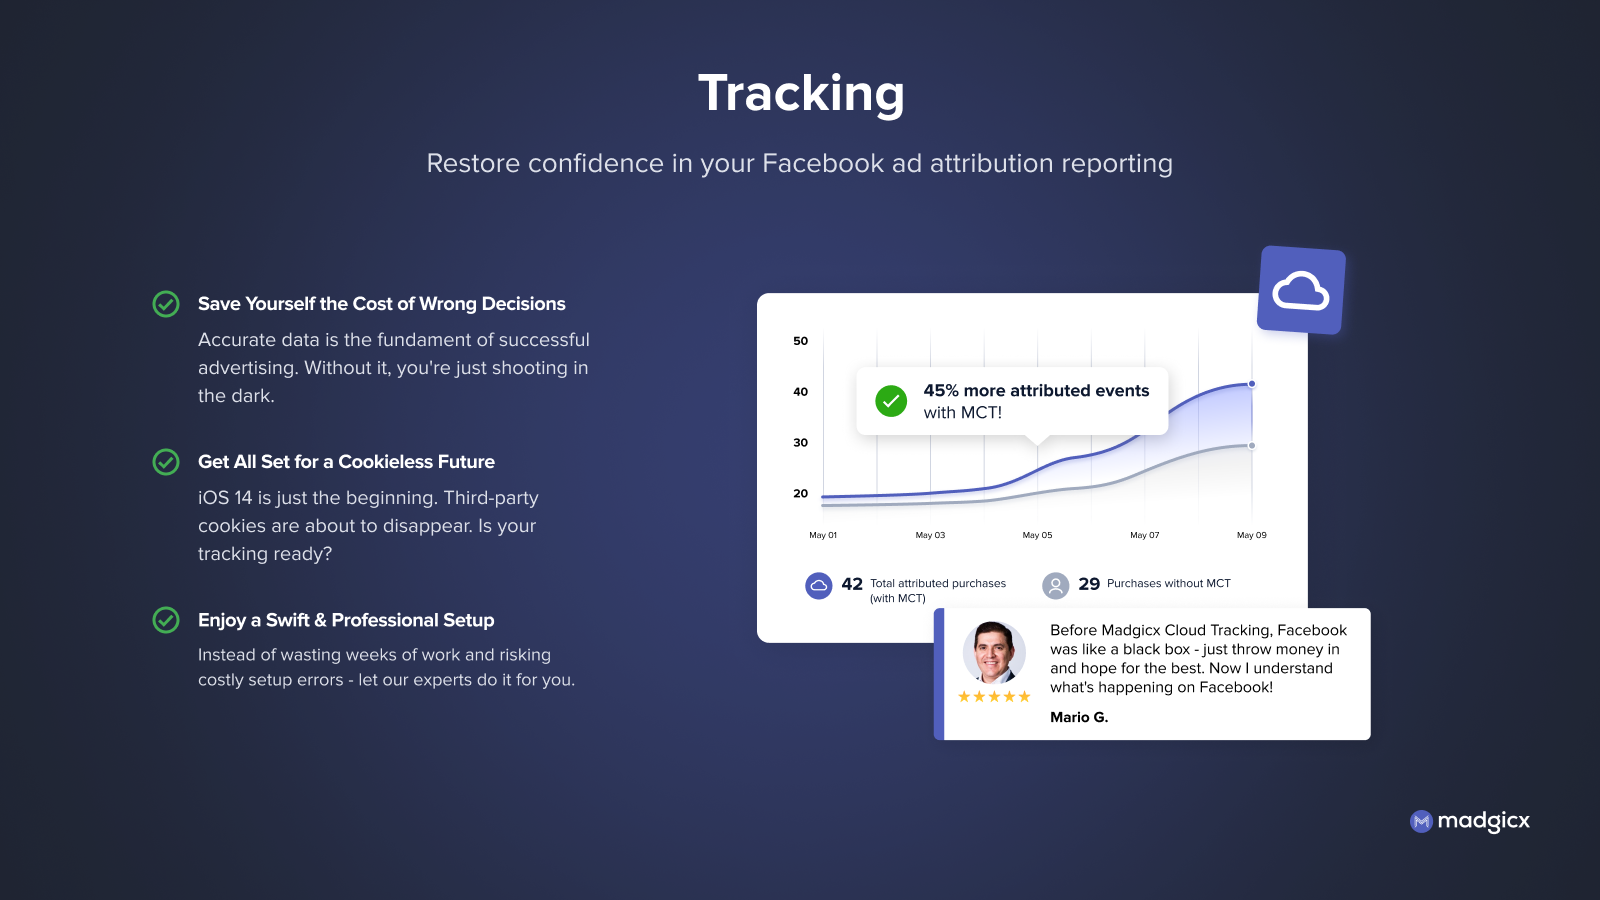 Restaure a confiança no rastreamento de anúncios do FB com atribuição precisa e acionável